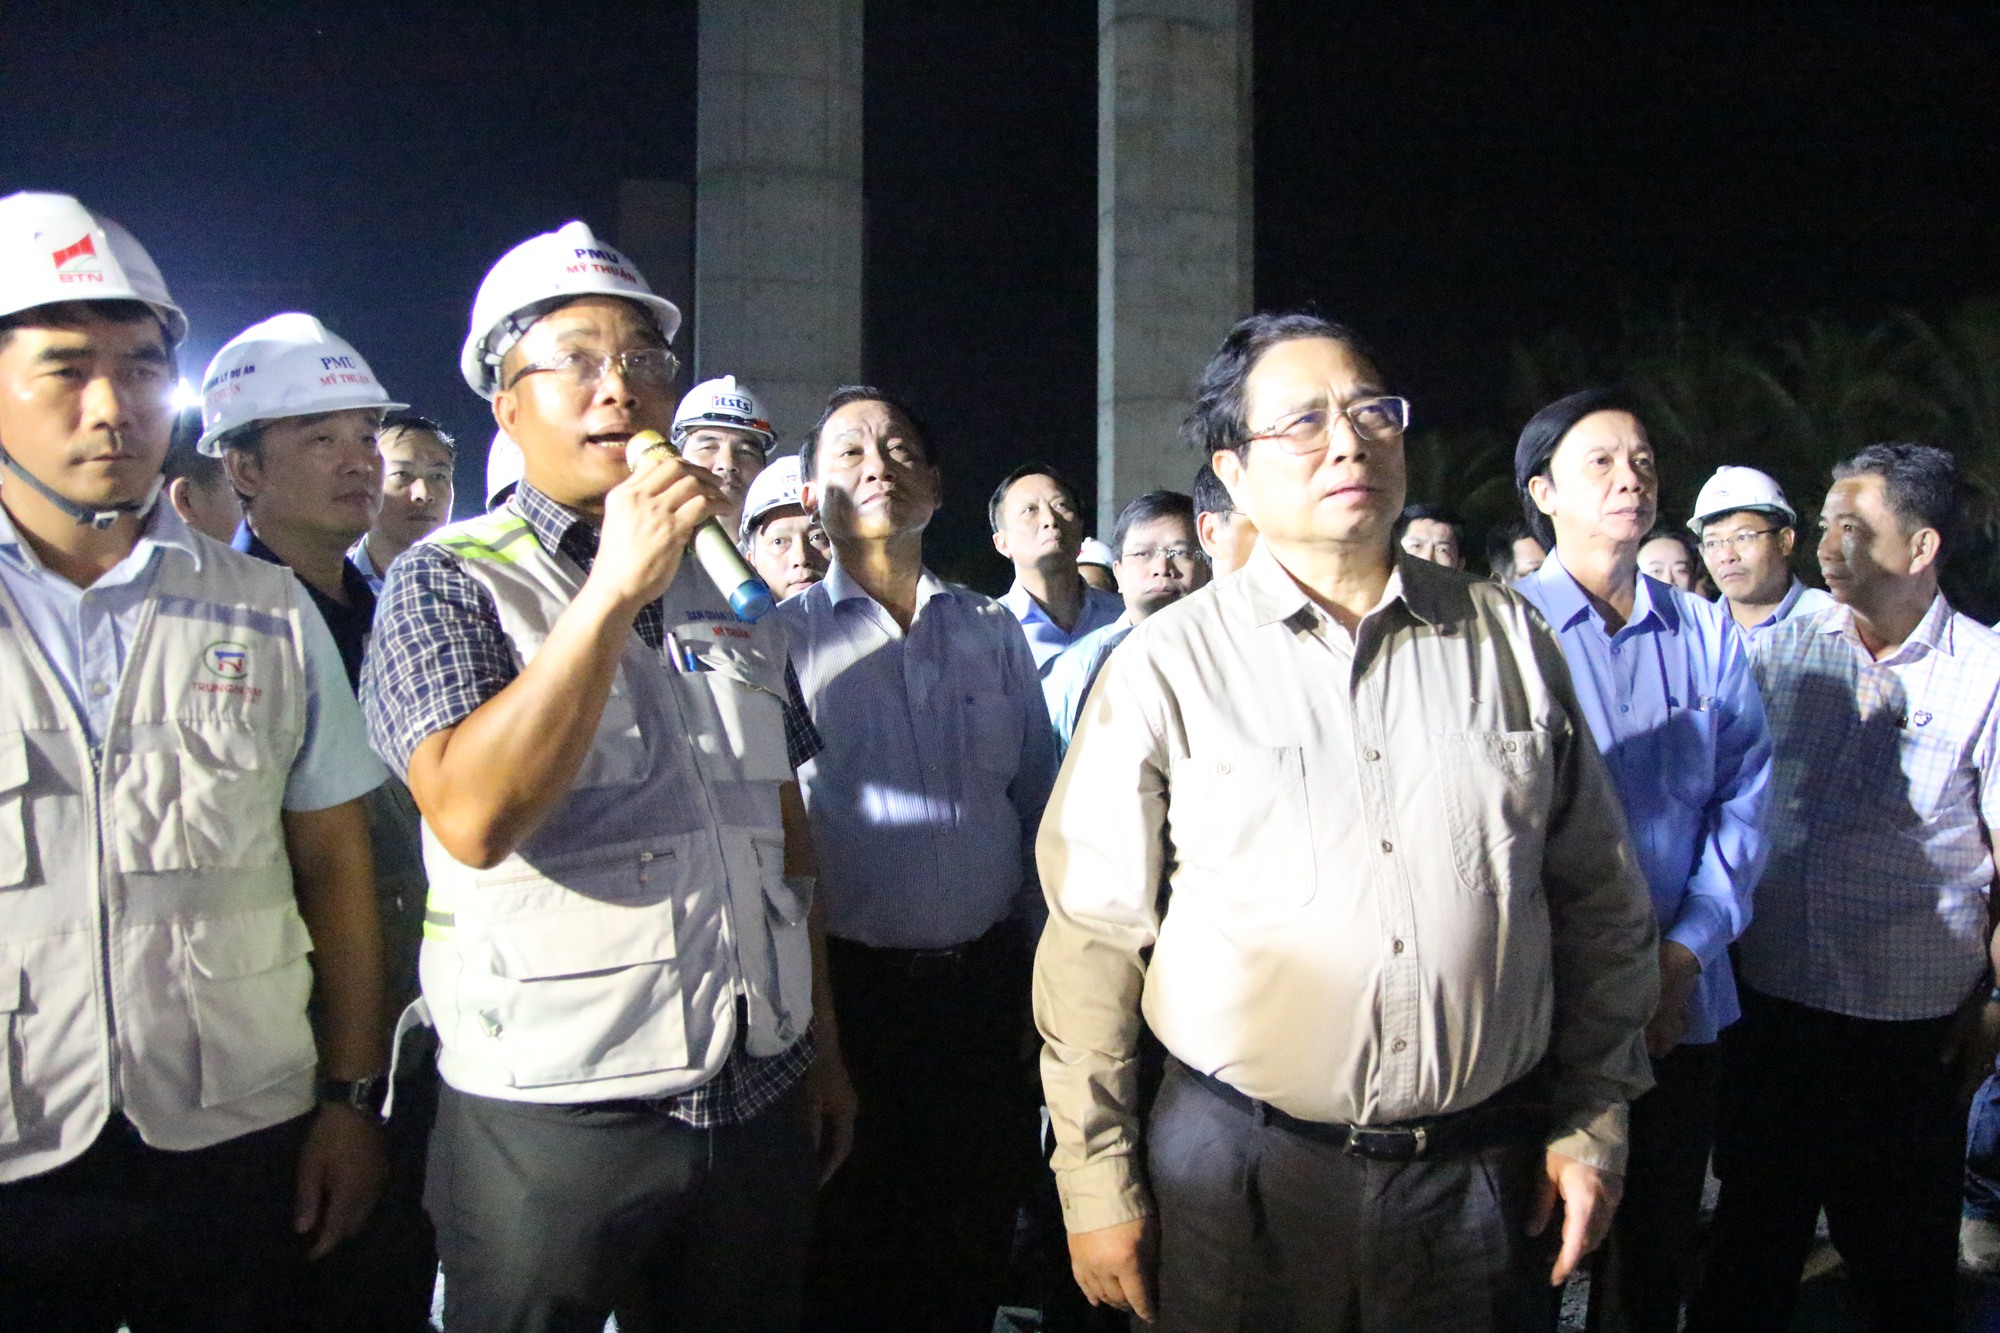 Chùm ảnh Thủ tướng Phạm Minh Chính kiểm tra cầu Rạch Miễu 2 trong đêm- Ảnh 5.